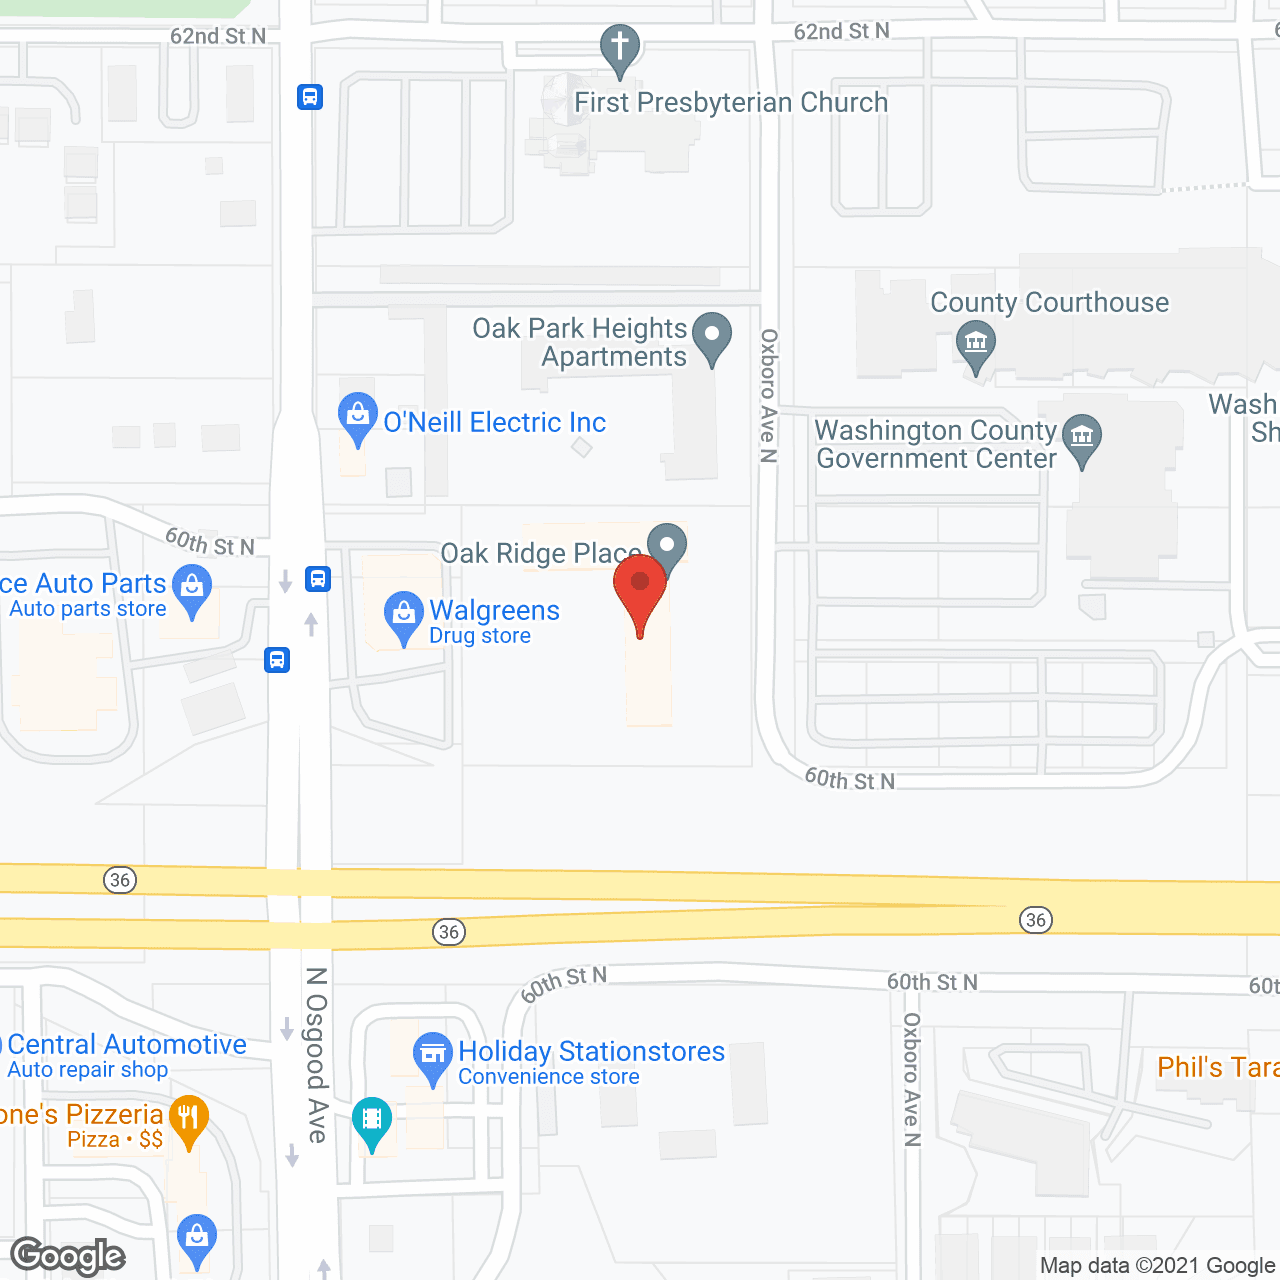 Oak Ridge Place in google map